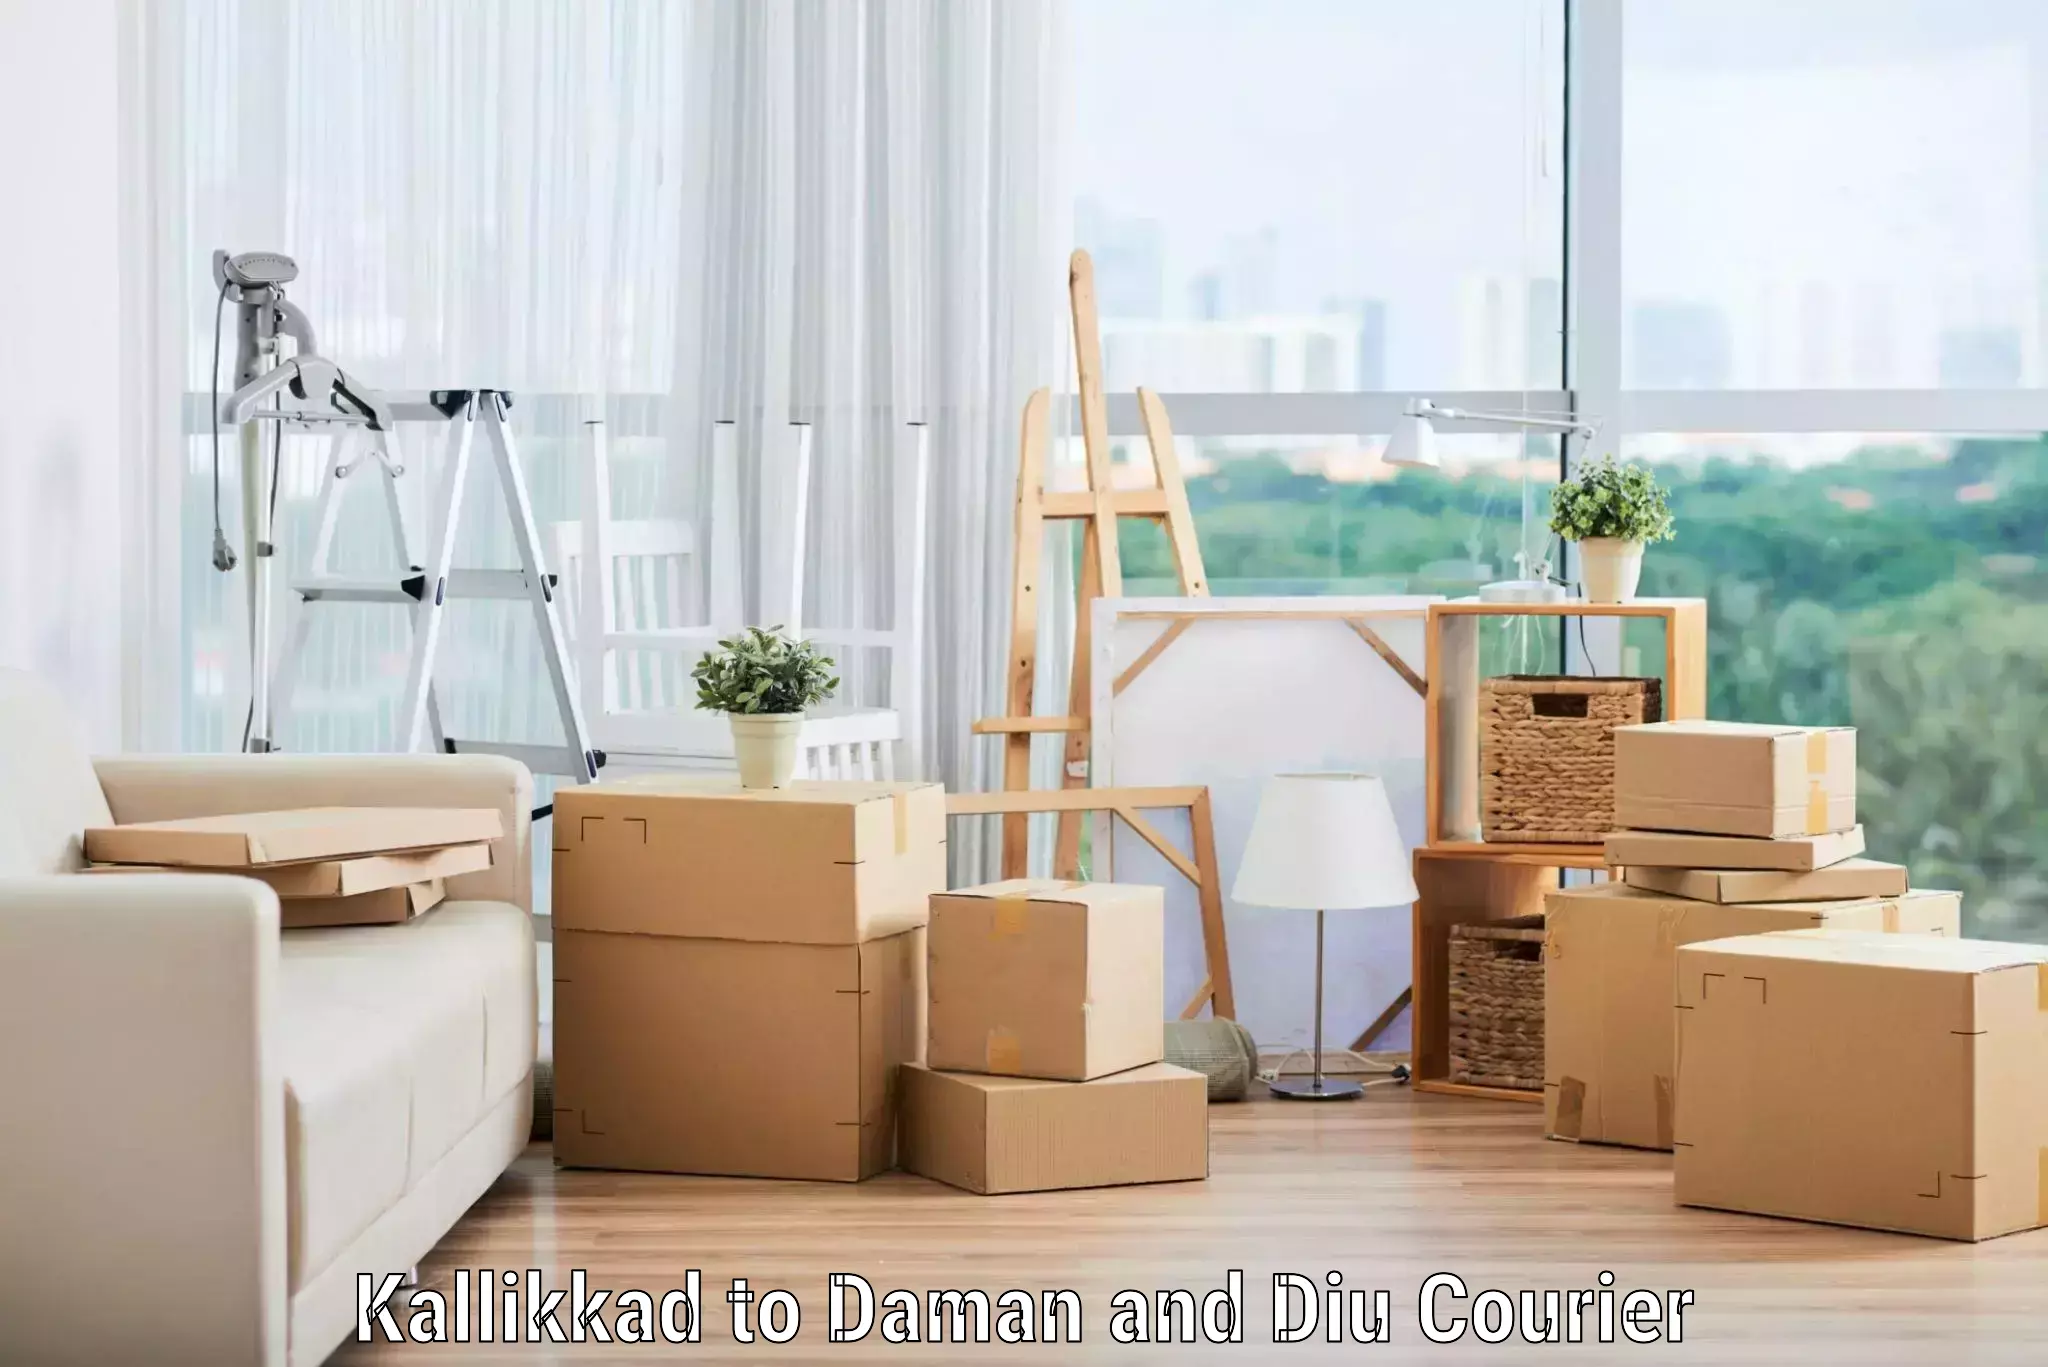 Furniture relocation experts Kallikkad to Daman and Diu